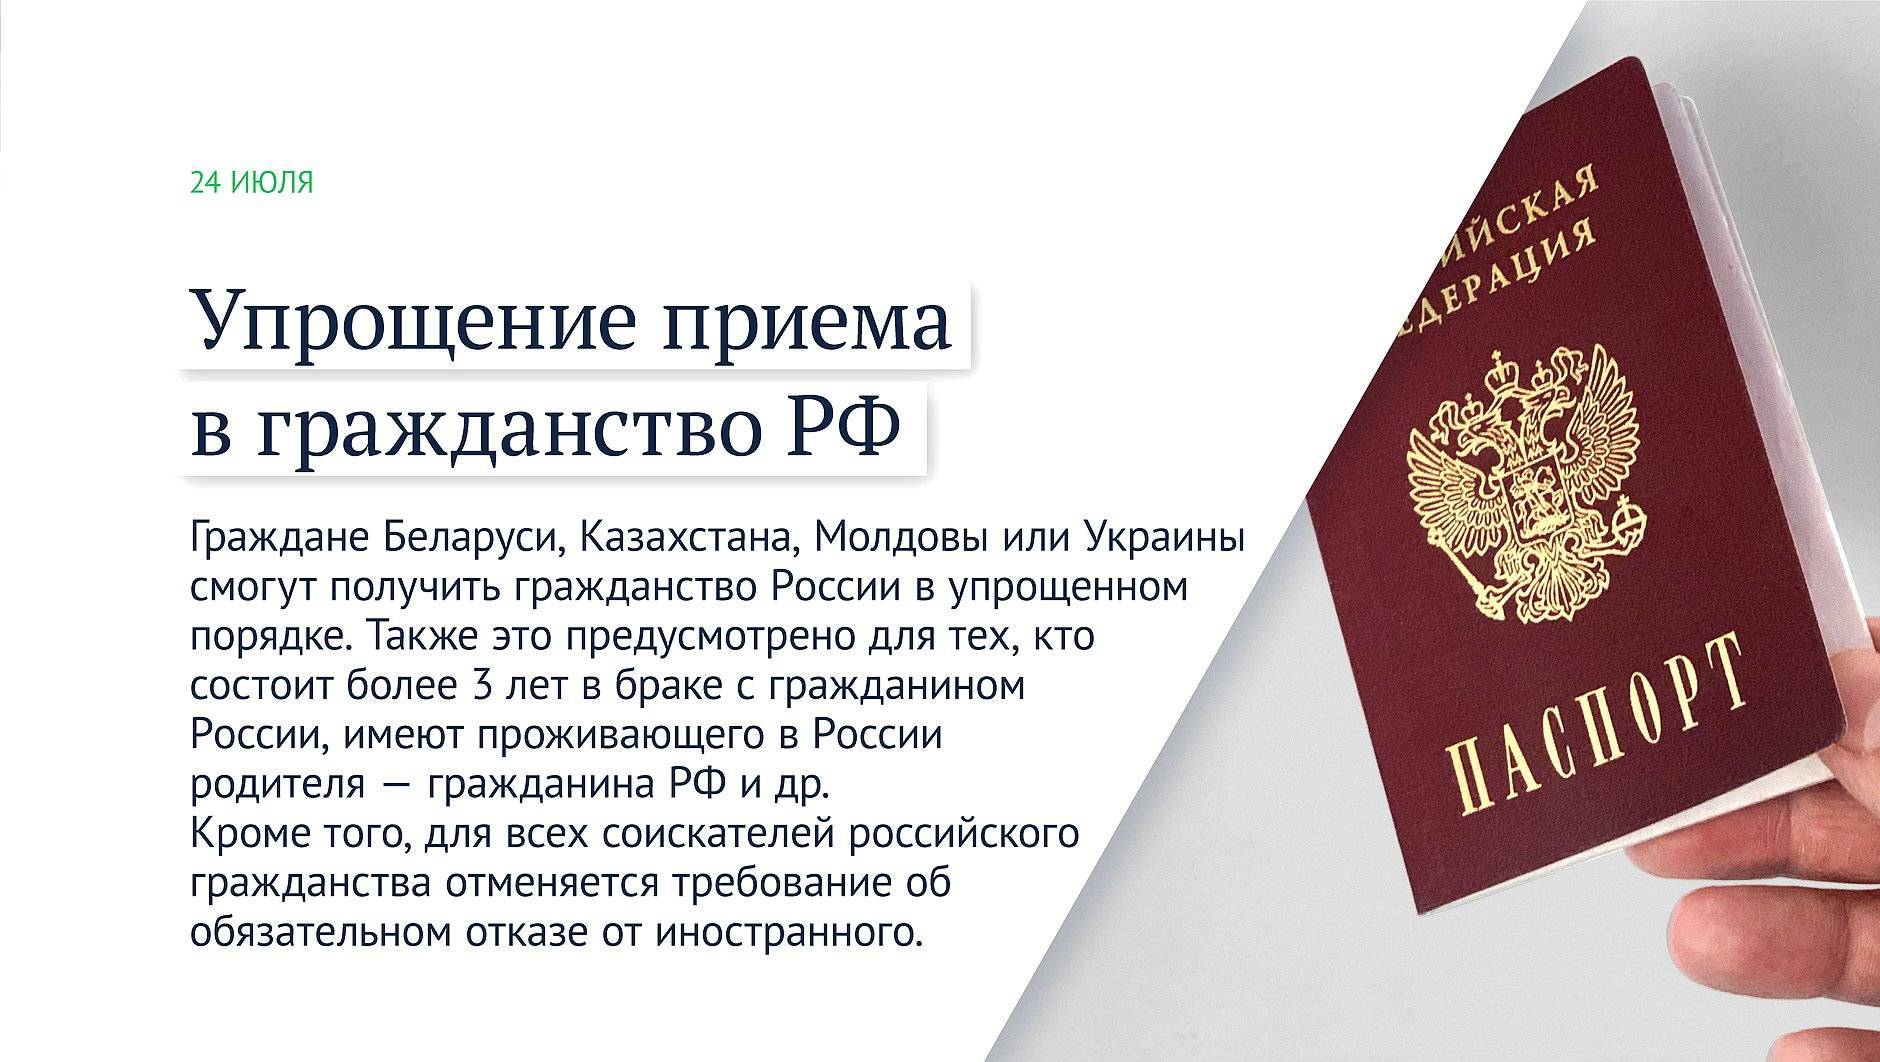 Как оформить гражданство рф для белорусов в упрощенном порядке